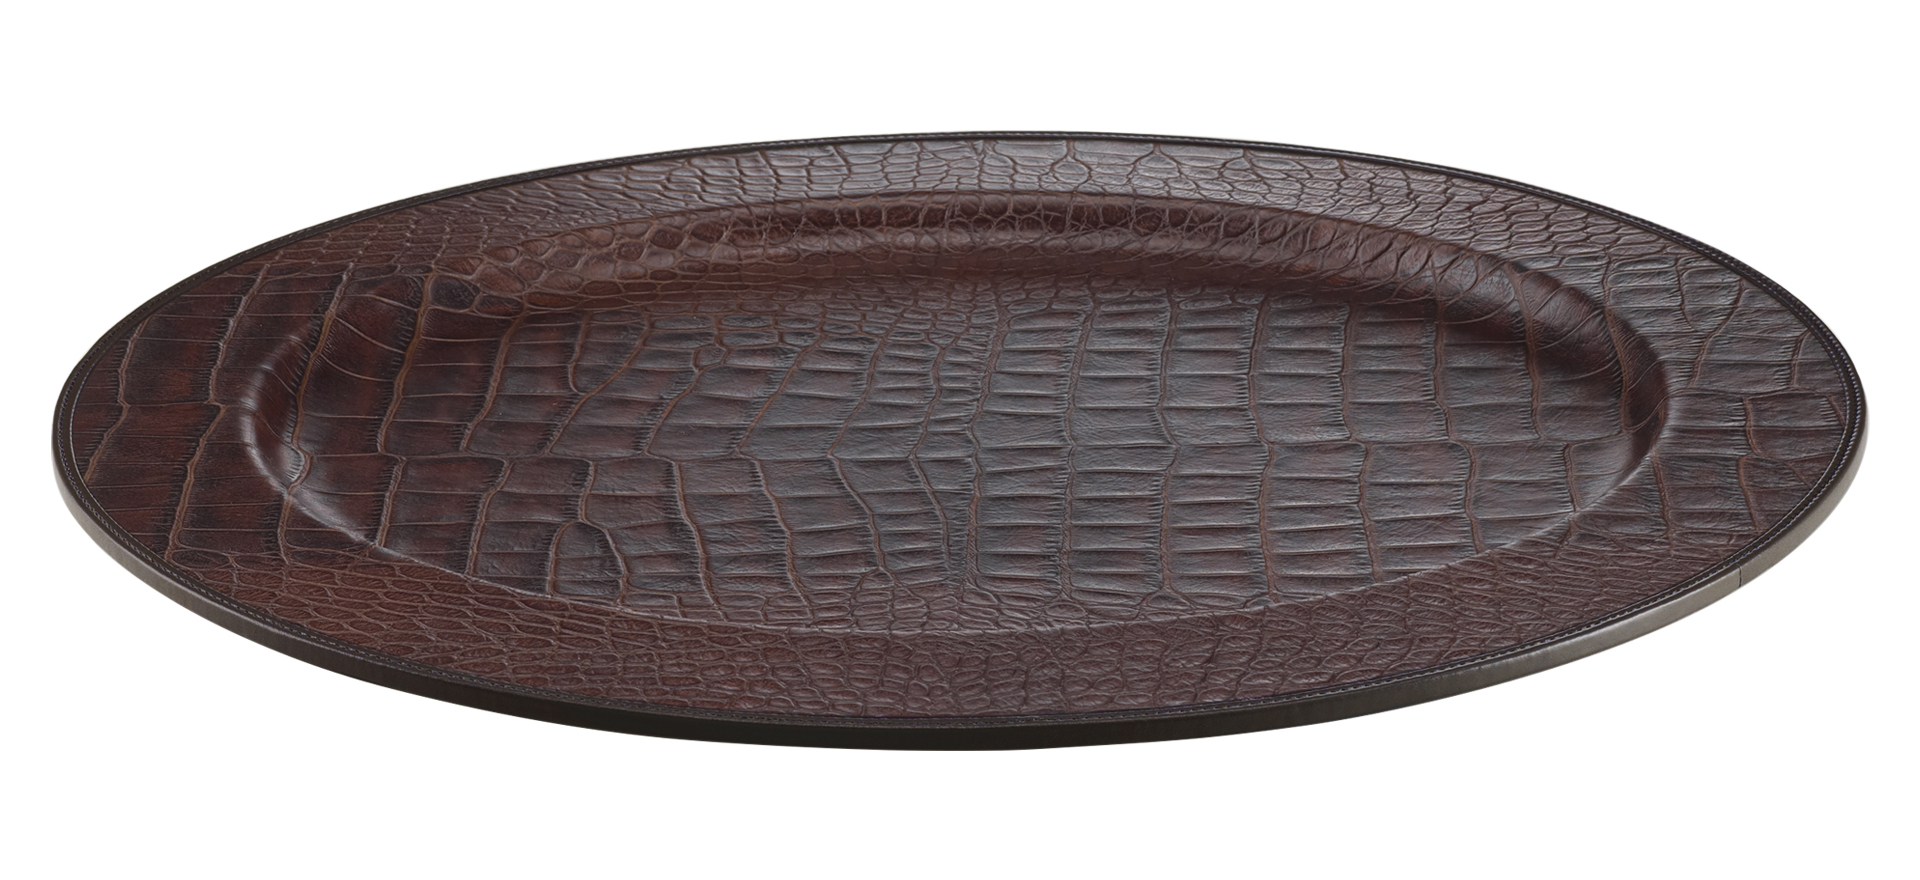 Mercurio is a leather tray, from Promemoria's catalogue | Promemoria